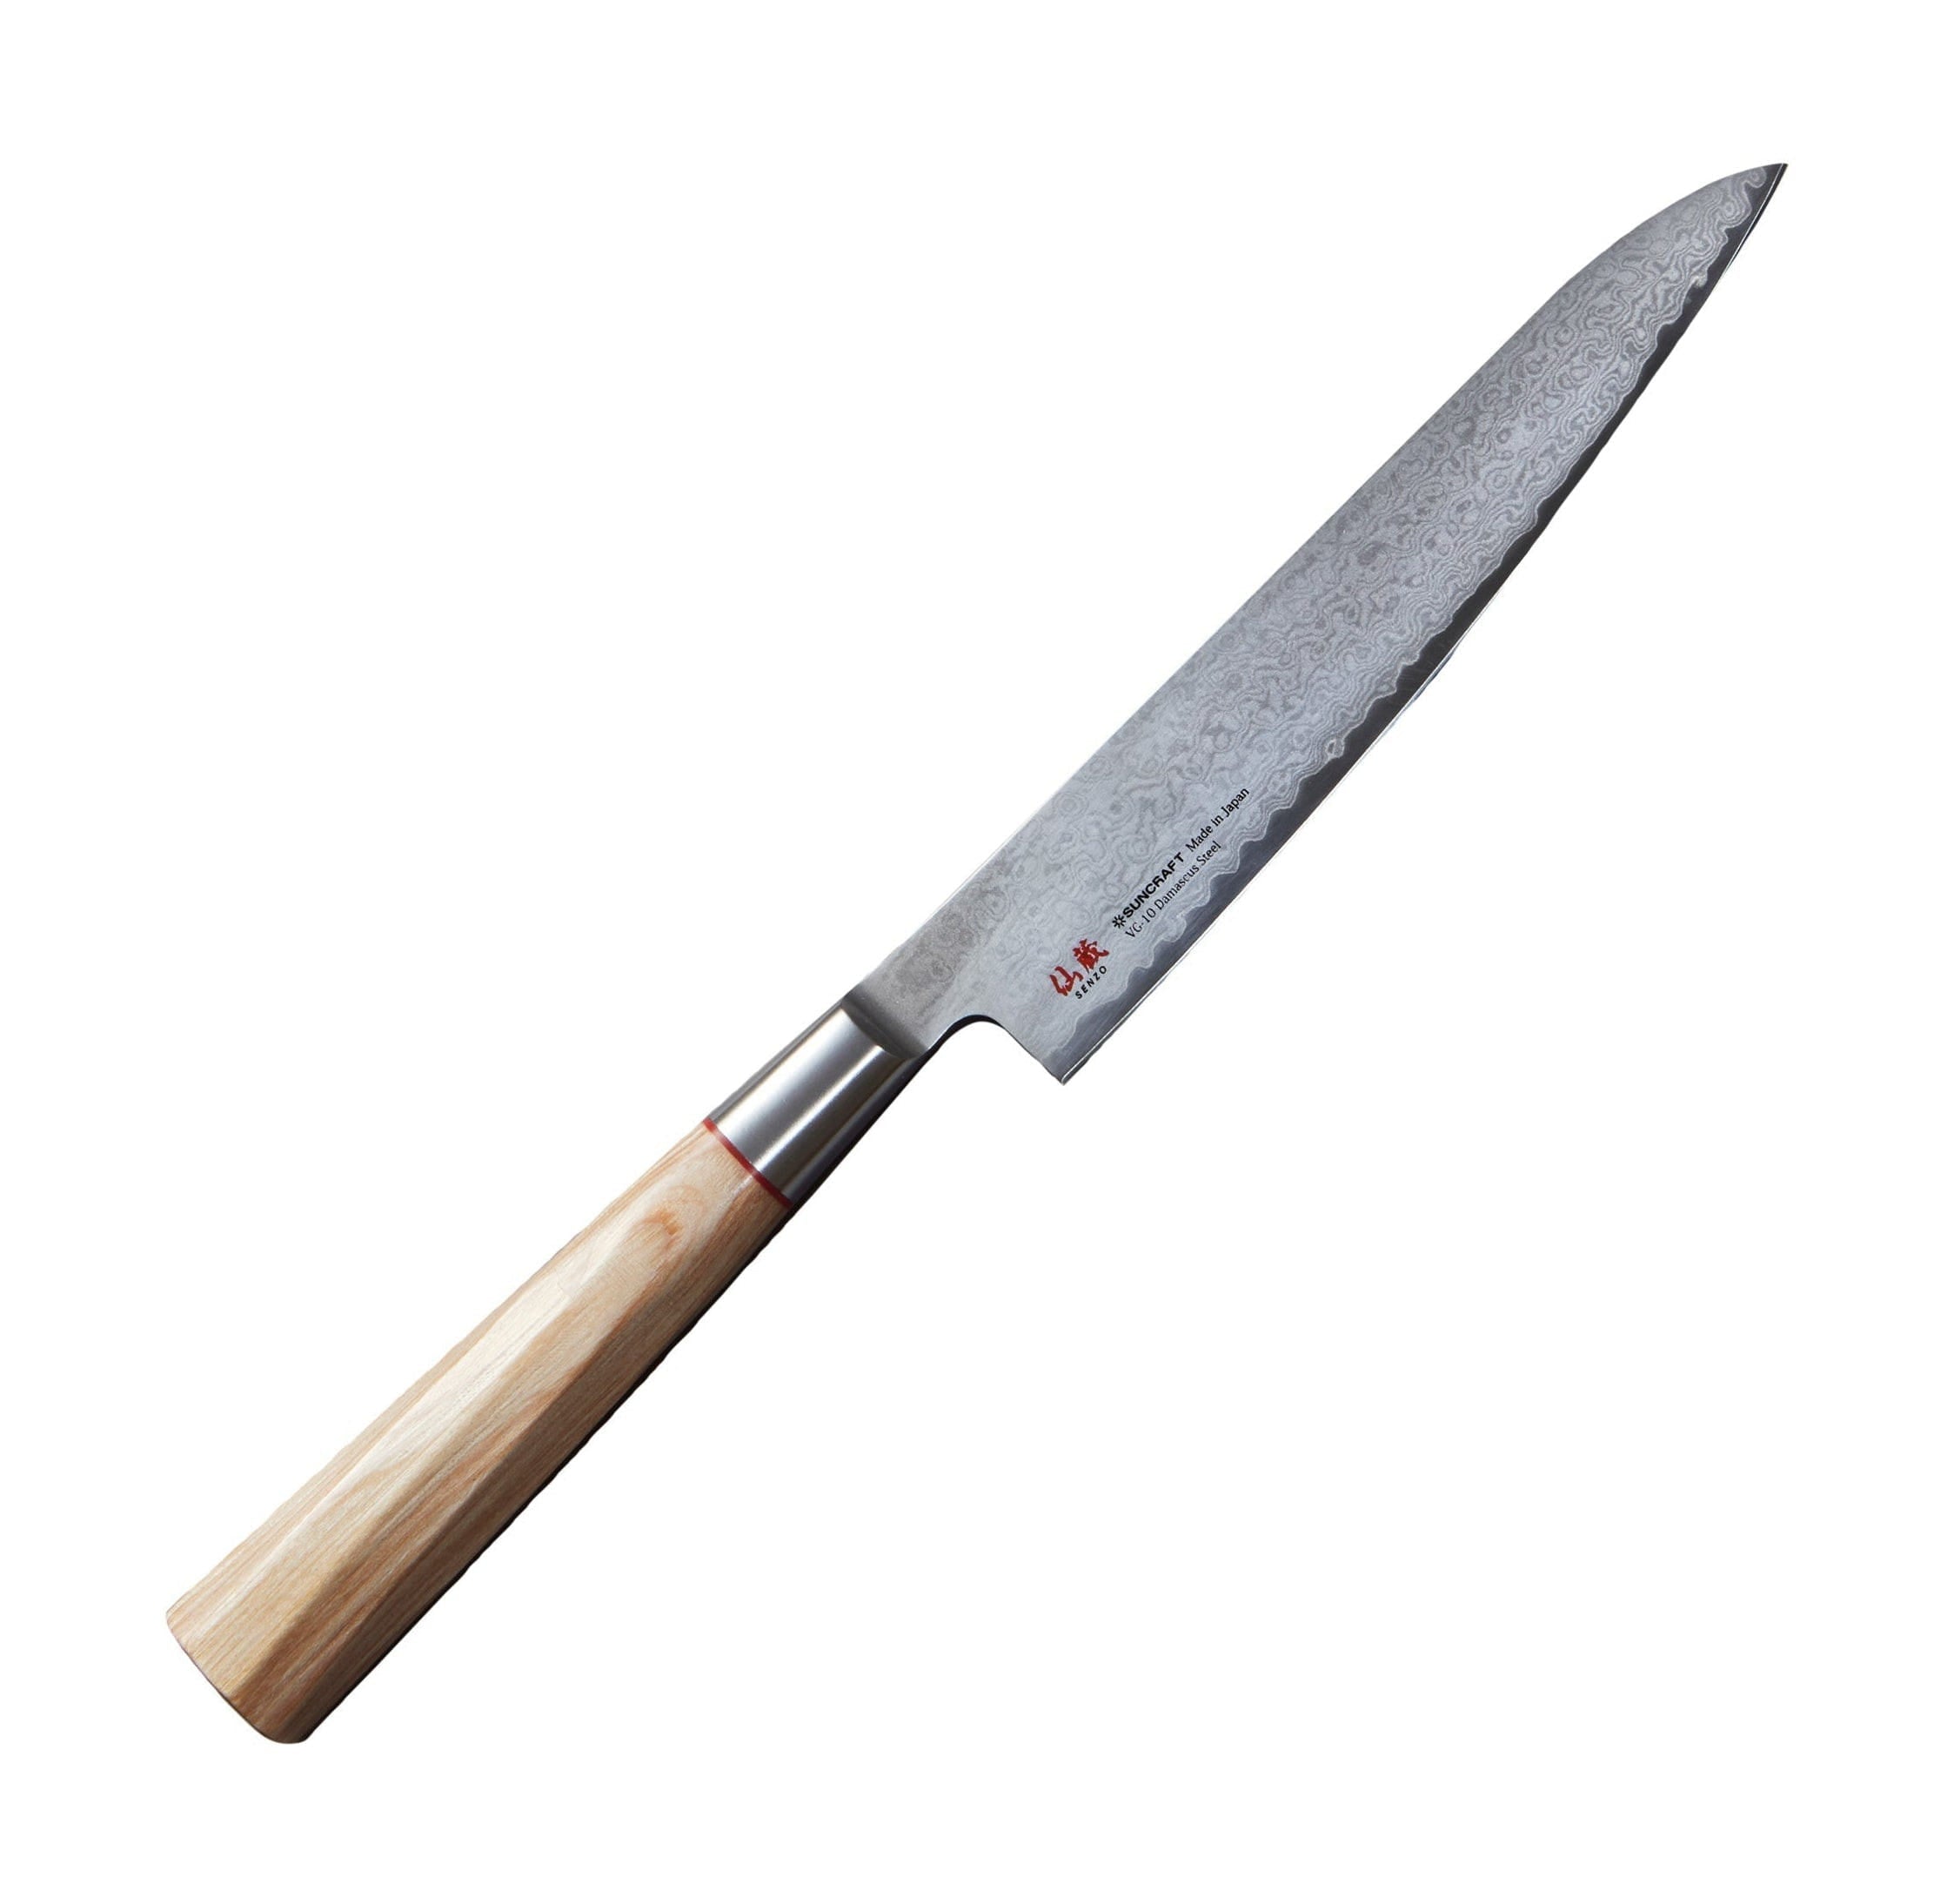 Senzo till 02 universell kniv, 15 cm